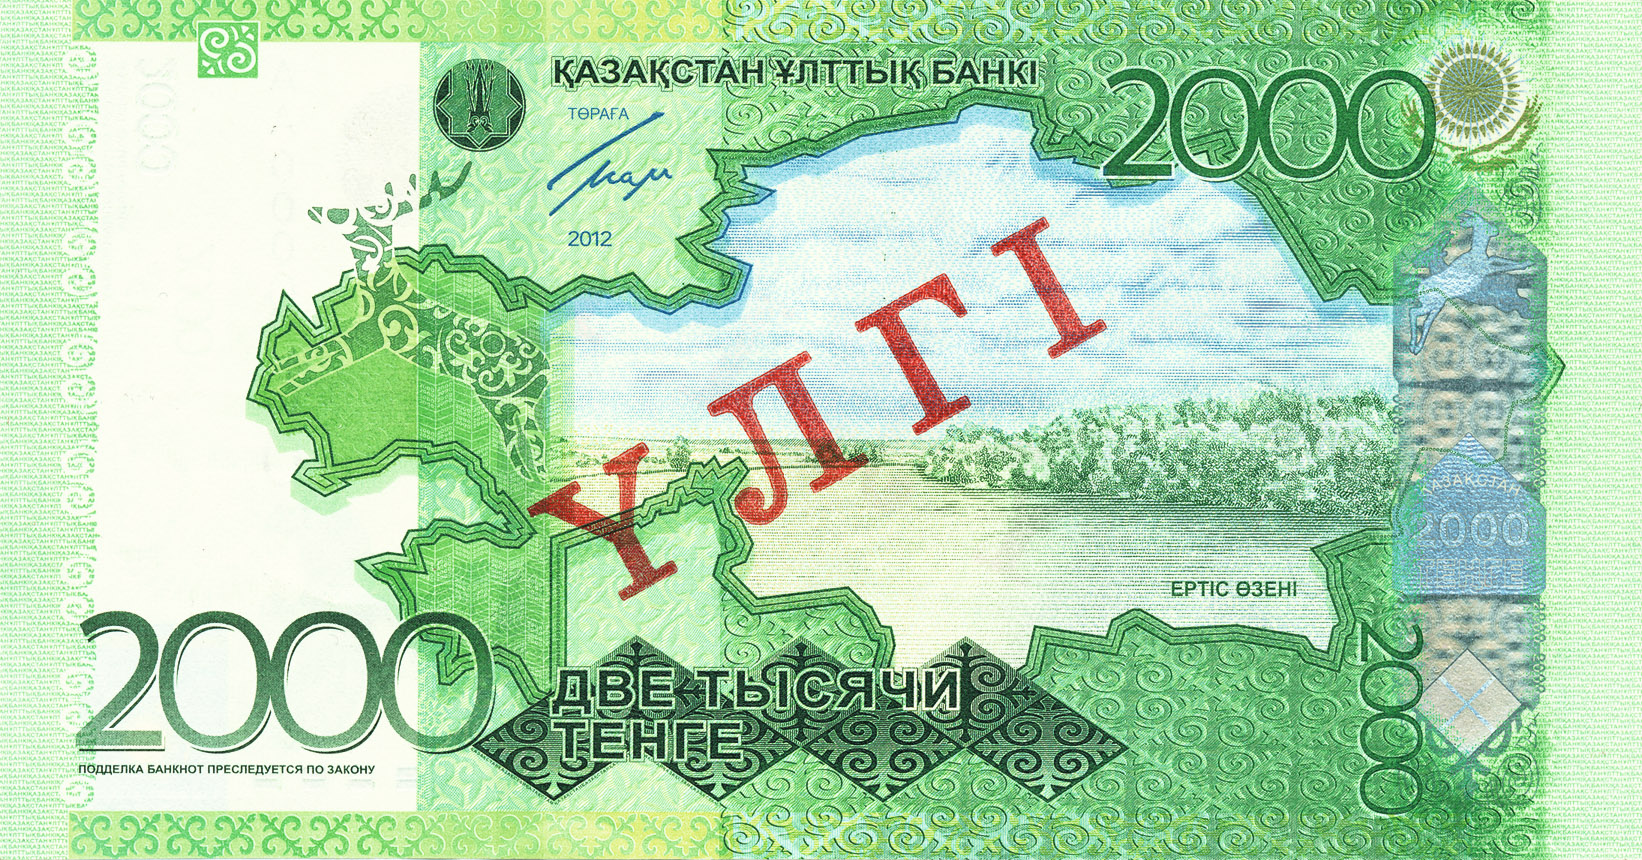 Казахстан: введена в обращение новая банкнота номиналом 2000 тенге